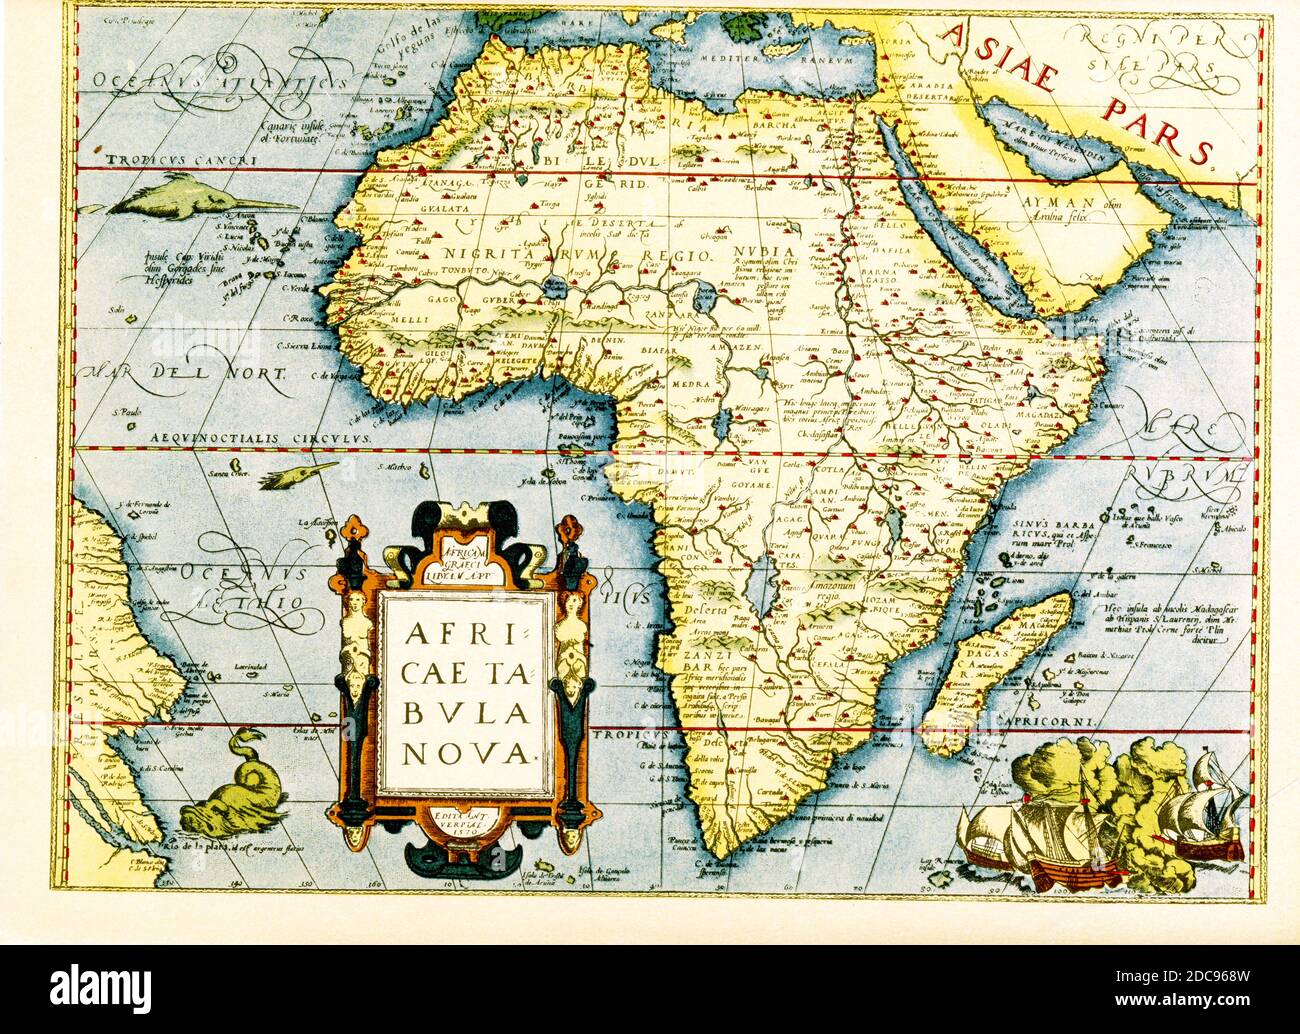 Mappa dell'Africa - l'inset in basso a sinistra titoli IT: Africa tabula Nova. Qui di seguito si trova la data 1570 e il luogo Anversa. Il cartografo è Abraham Ortelius, cartografo, geografo e cosmografo olandese, convenzionalmente riconosciuto come creatore del primo atlante moderno, il Theatrum Orbis Terrarum. Foto Stock